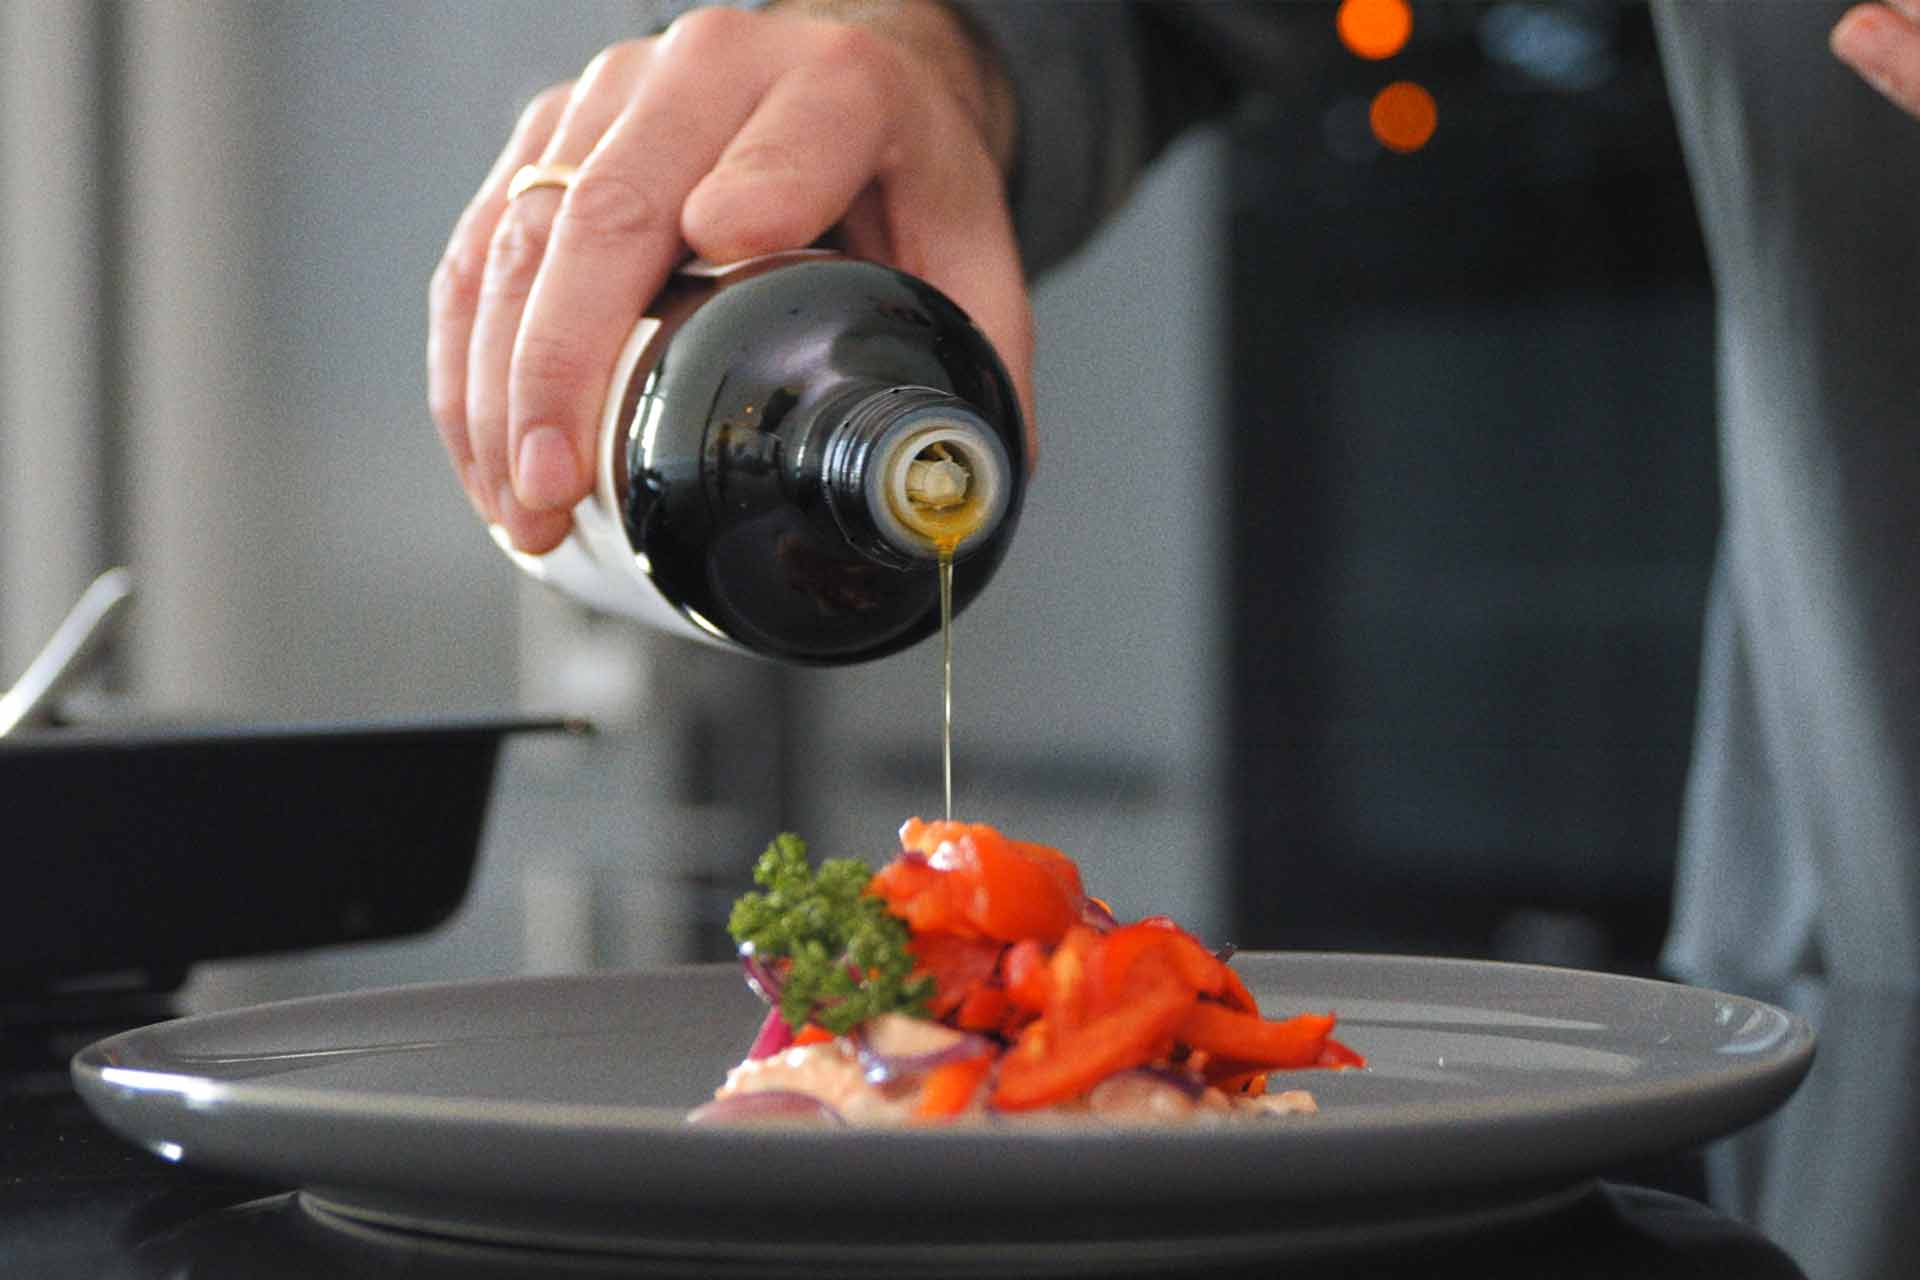 Das Foto zeigt Luis Dias' Hand, die eine Flasche Olivenöl Extra Vergine waagerecht hält und das kaltgepresste Olivenöl über ein appetitlich angerichtetes Gericht auf einem Teller gießt, um Geschmack und Qualität zu verfeinern.